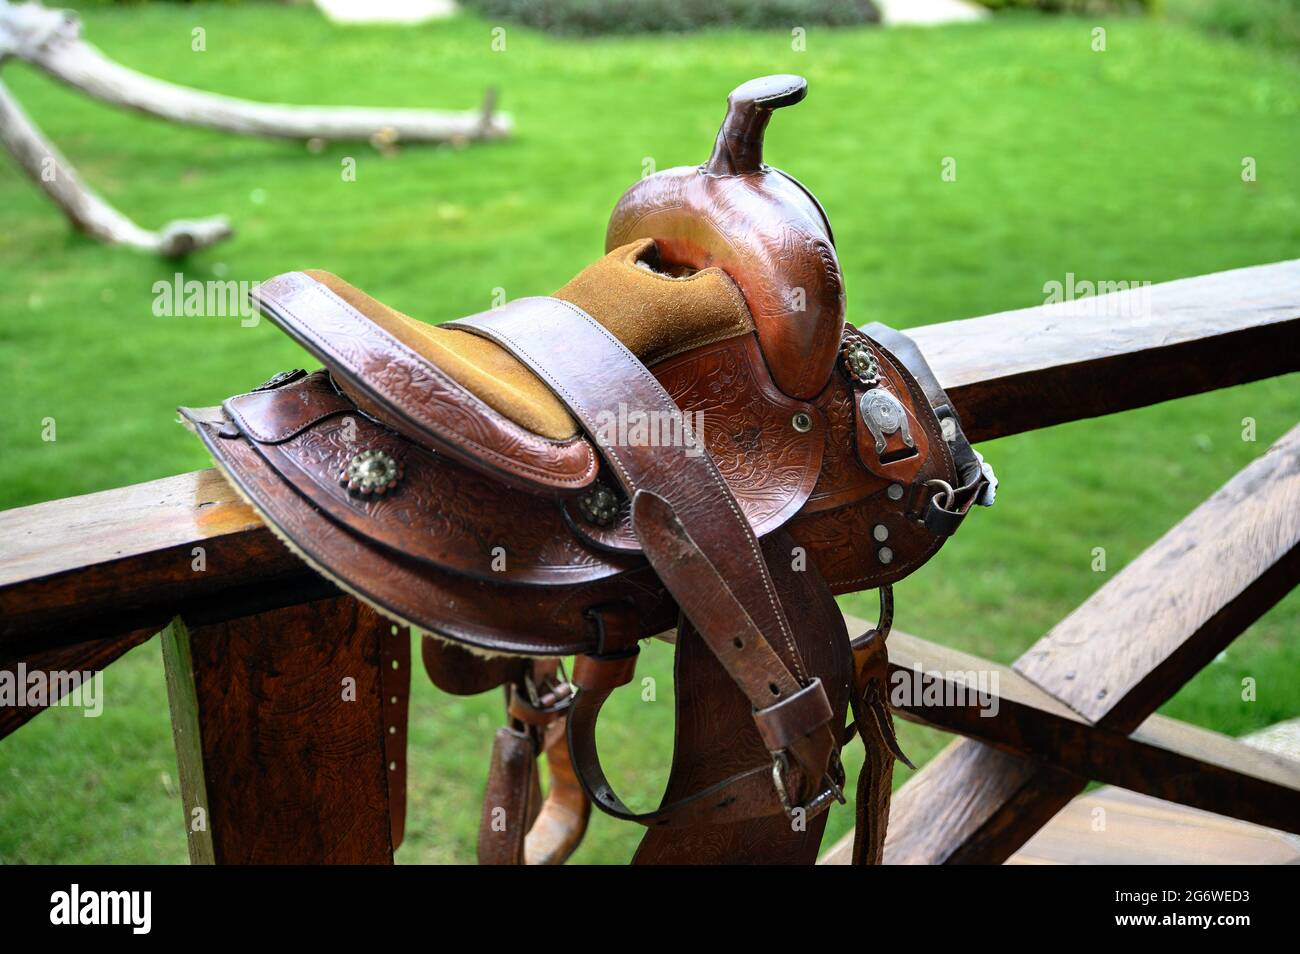 Schöner Lederpferdsattel auf einem Holzzaun. Kein Pferd, grünes Gras im Hintergrund. Stockfoto